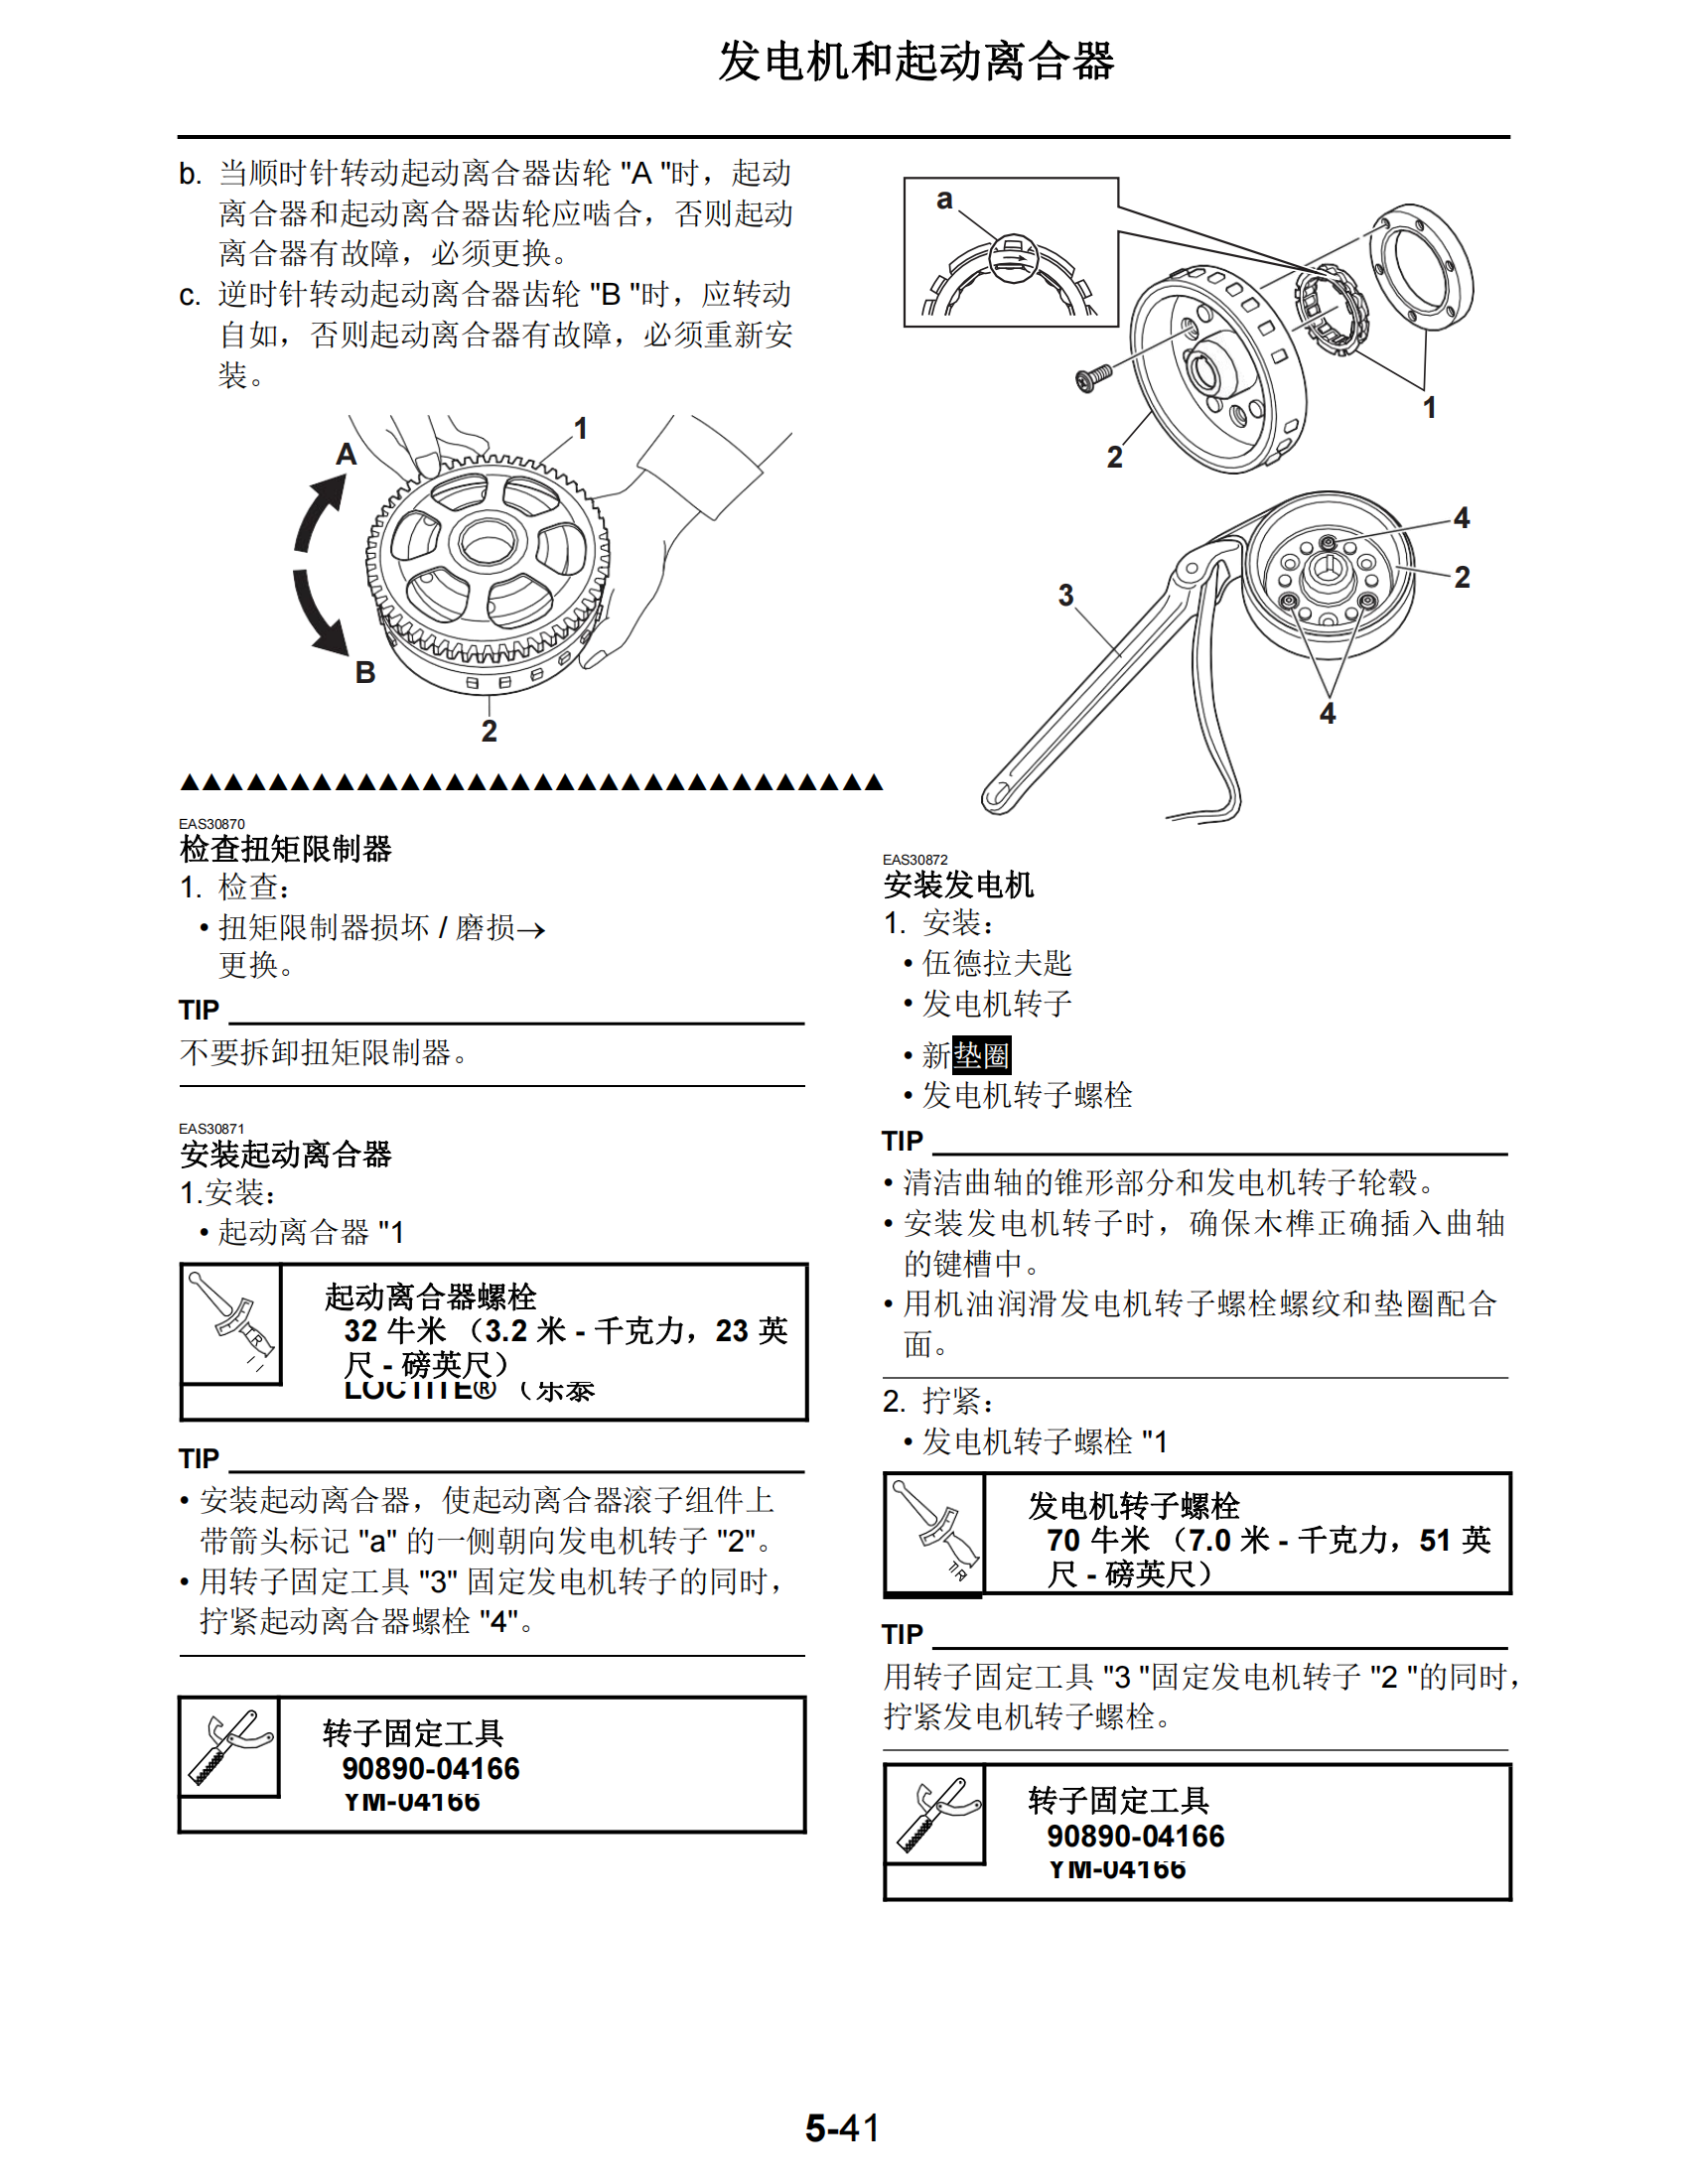 简体中文2014-2015年雅马哈fz07维修手册适用于同年份mt07维修手册插图4